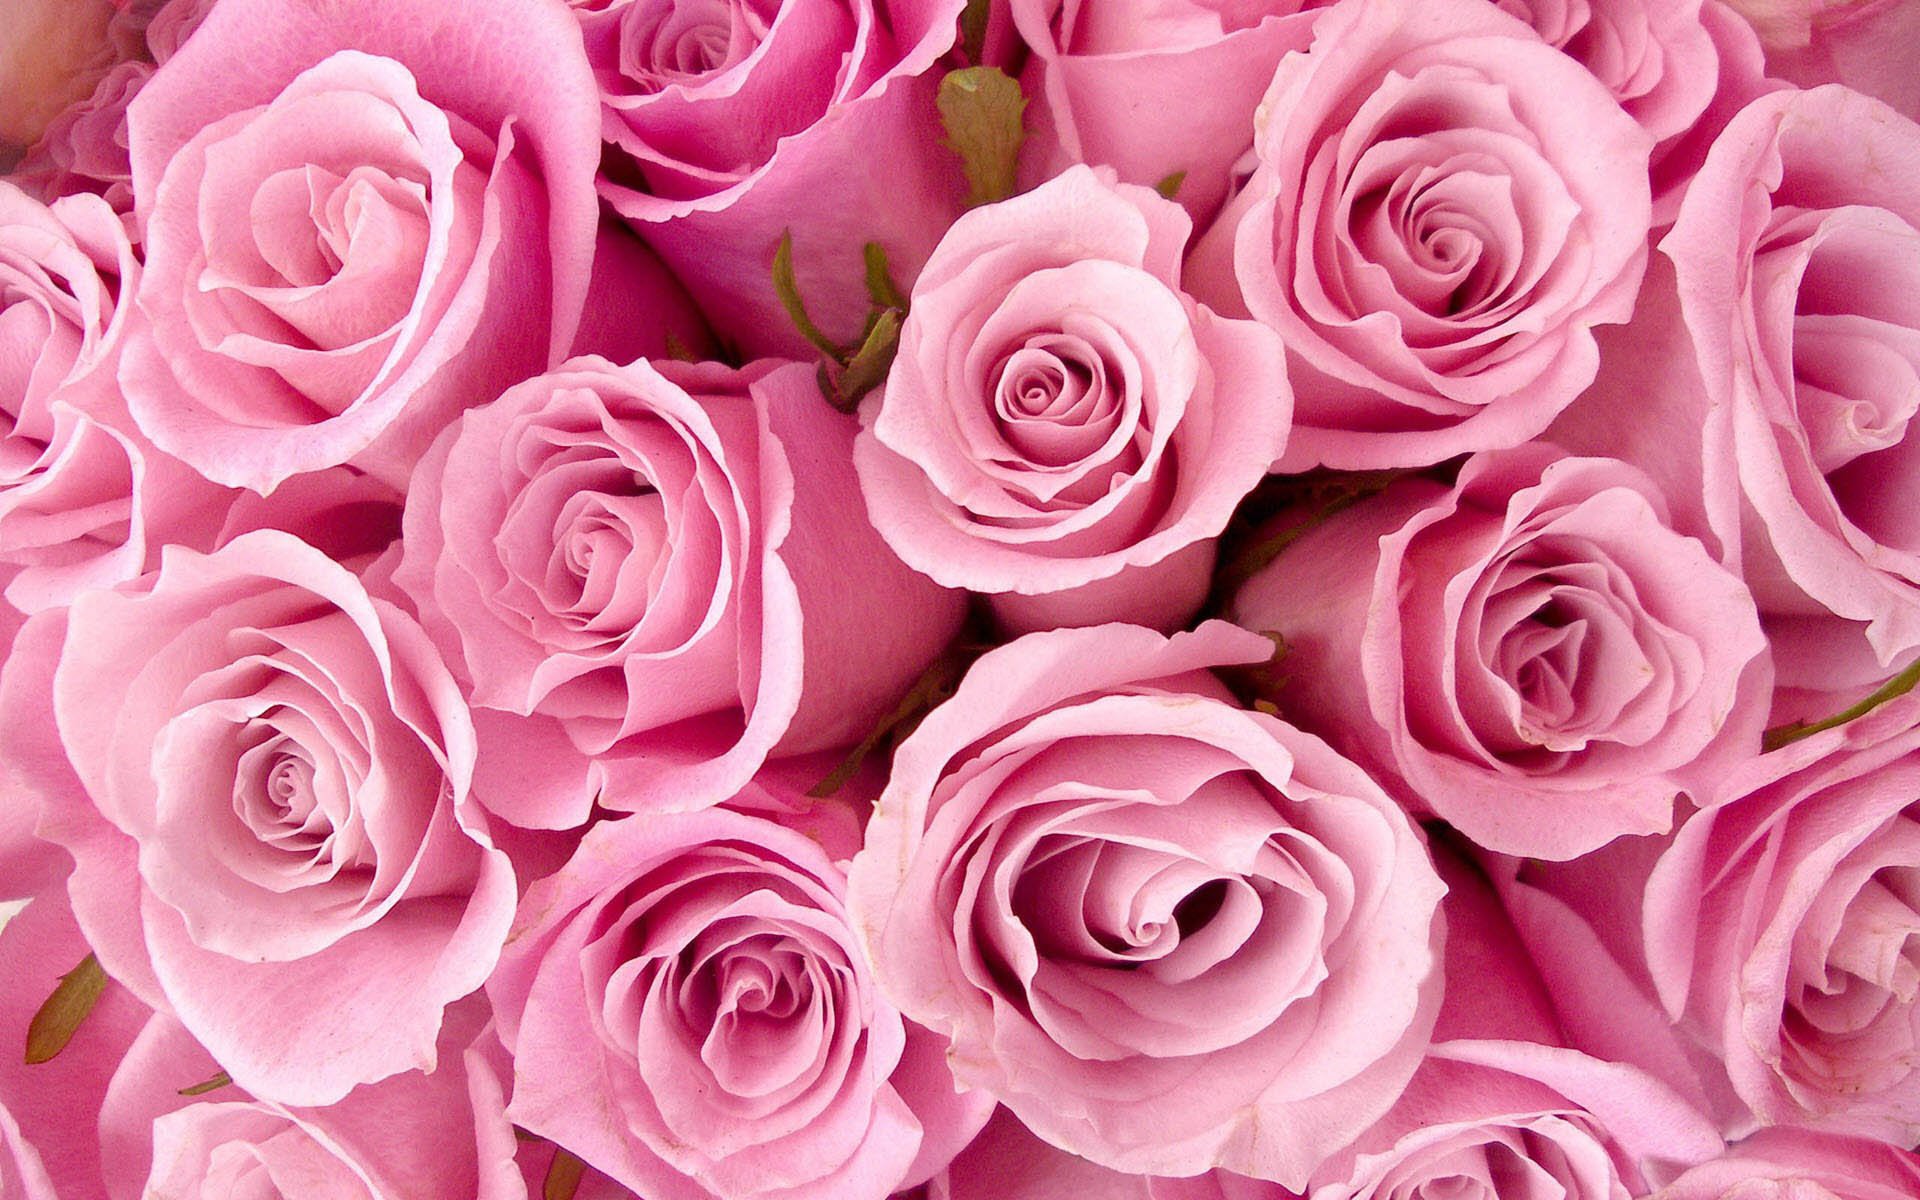 Hoa hồng không chỉ là biểu tượng của tình yêu, mà còn thể hiện sự tinh khiết và đẹp đẽ. Hãy xem hình nền hoa hồng, để cảm nhận vẻ đẹp quyến rũ của chúng, và truyền tải tình cảm đầy ý nghĩa.